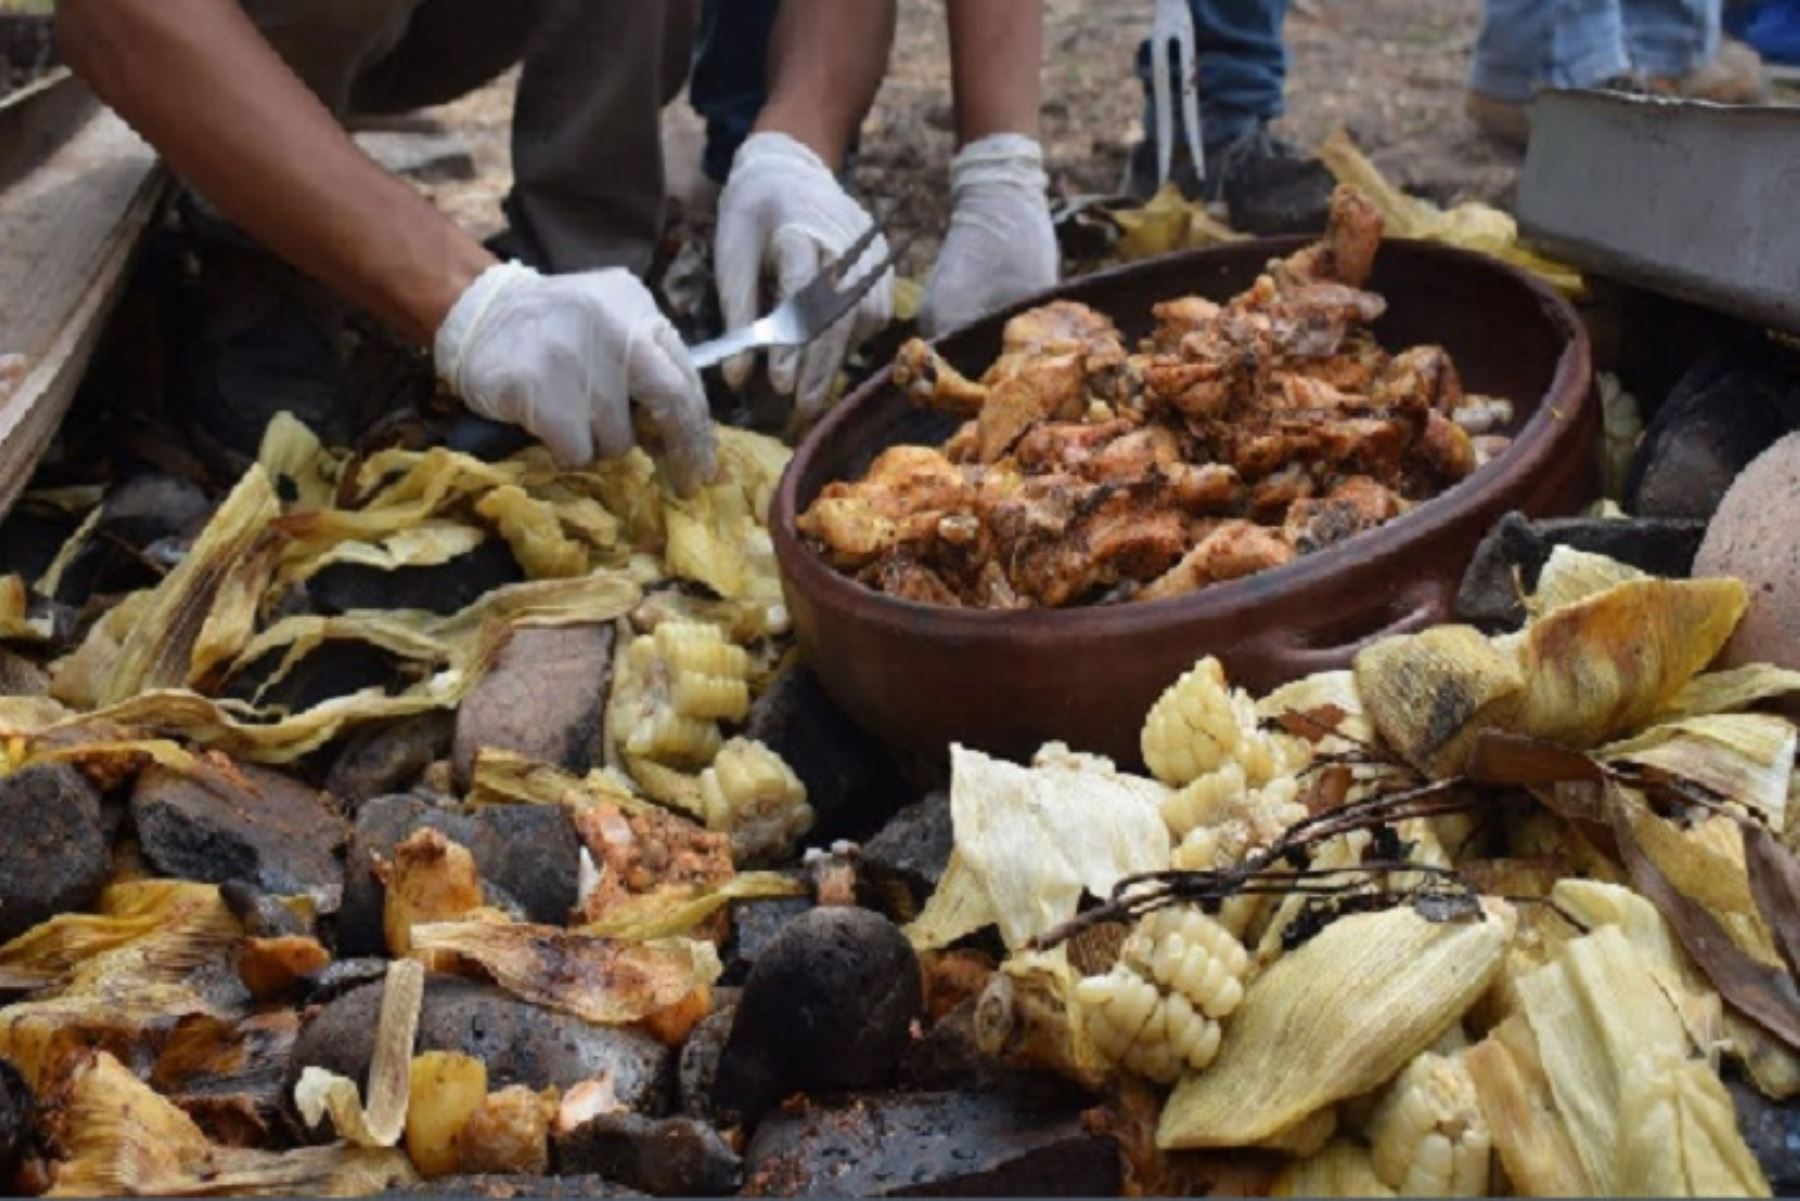 Por sexto año consecutivo, hoy se celebra el “Día Nacional de la Pachamanca”, plato ancestral peruano.